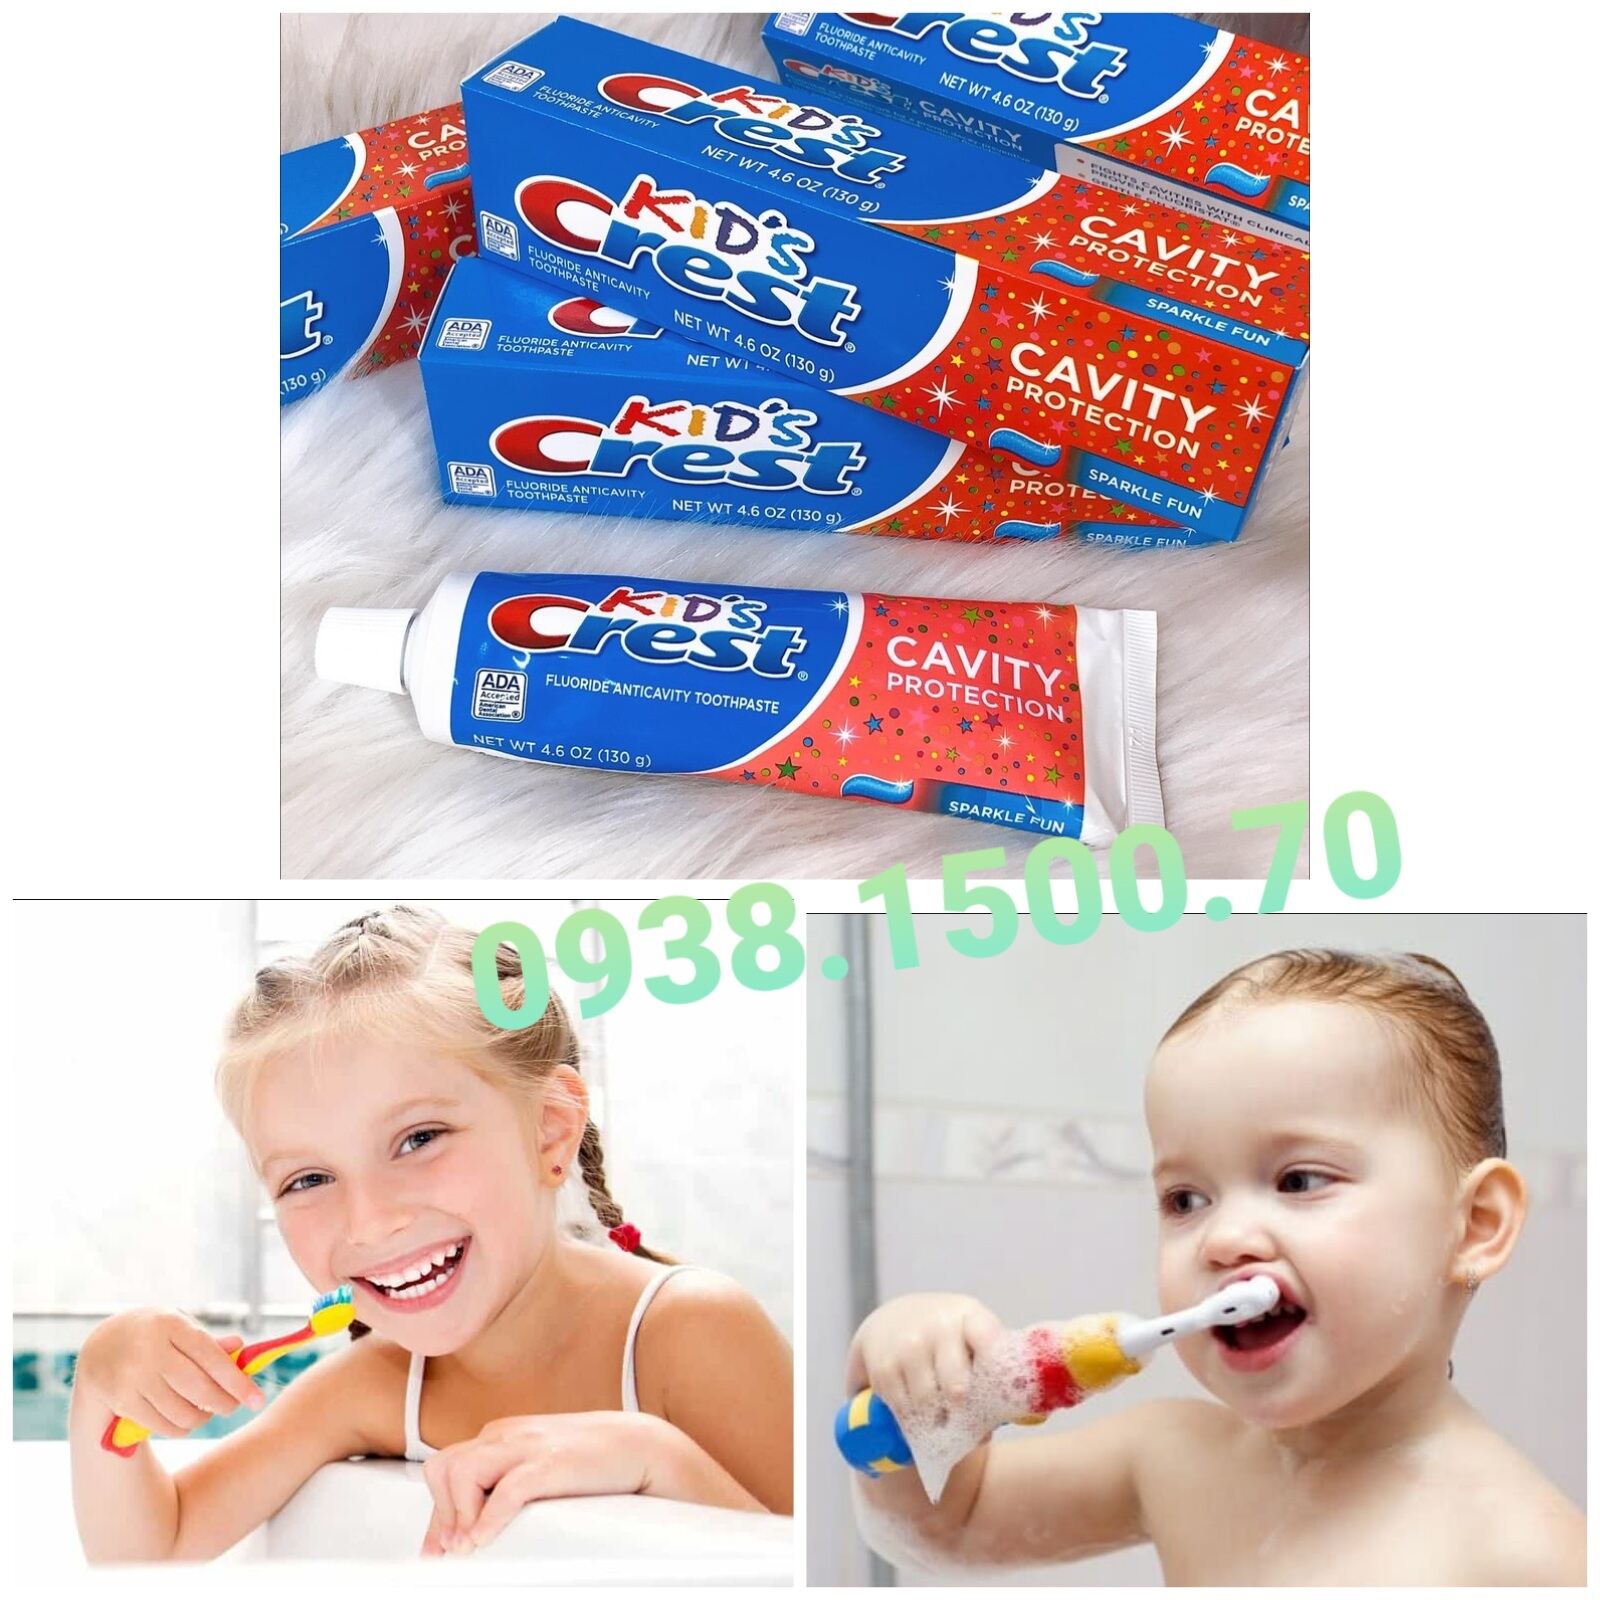 Kem đánh răng KHÔNG ĐƯỜNG CHO TRẺ EM Kid s Crest Cavity Protection Sparkle